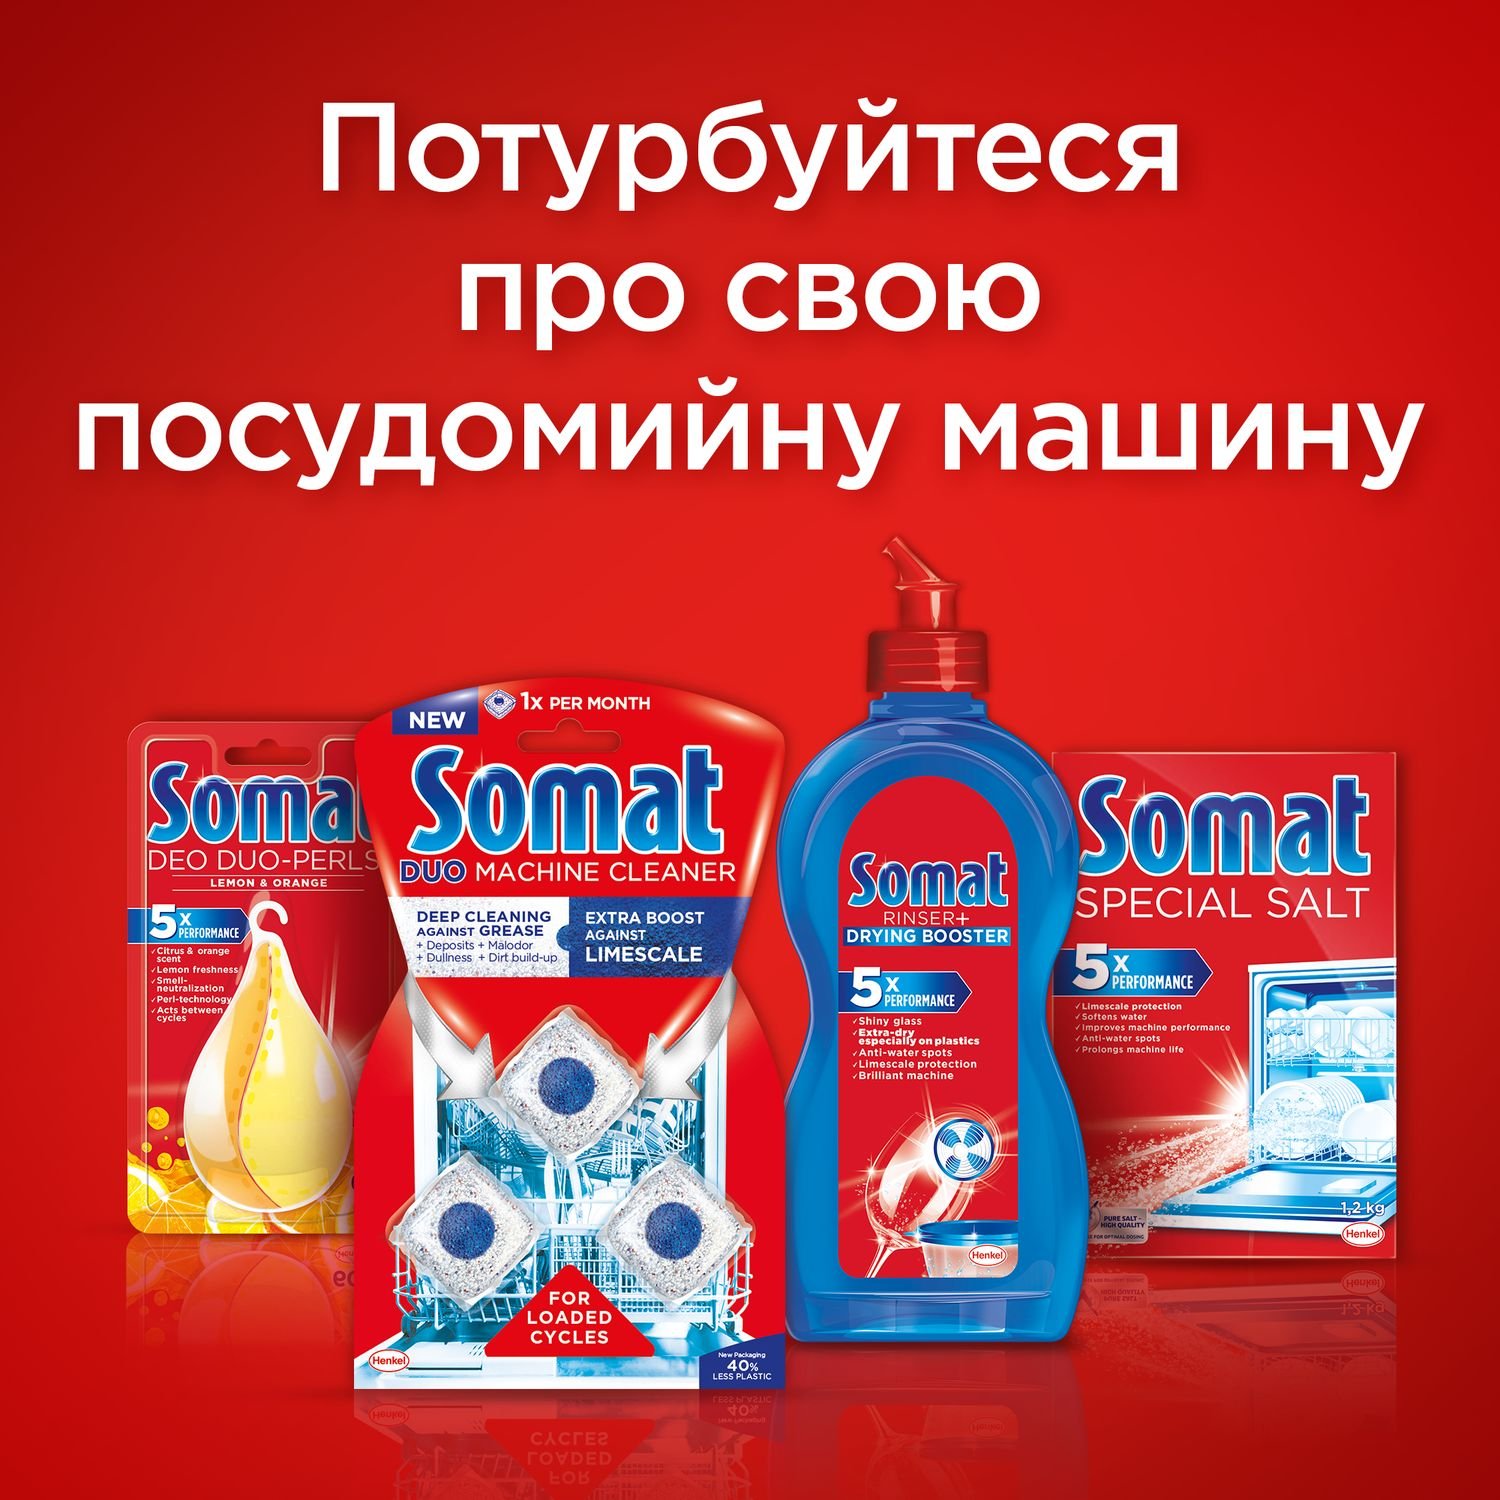 Таблетки для мытья посуды в посудомоечной машине Somat Classic, 220 таблеток - фото 8